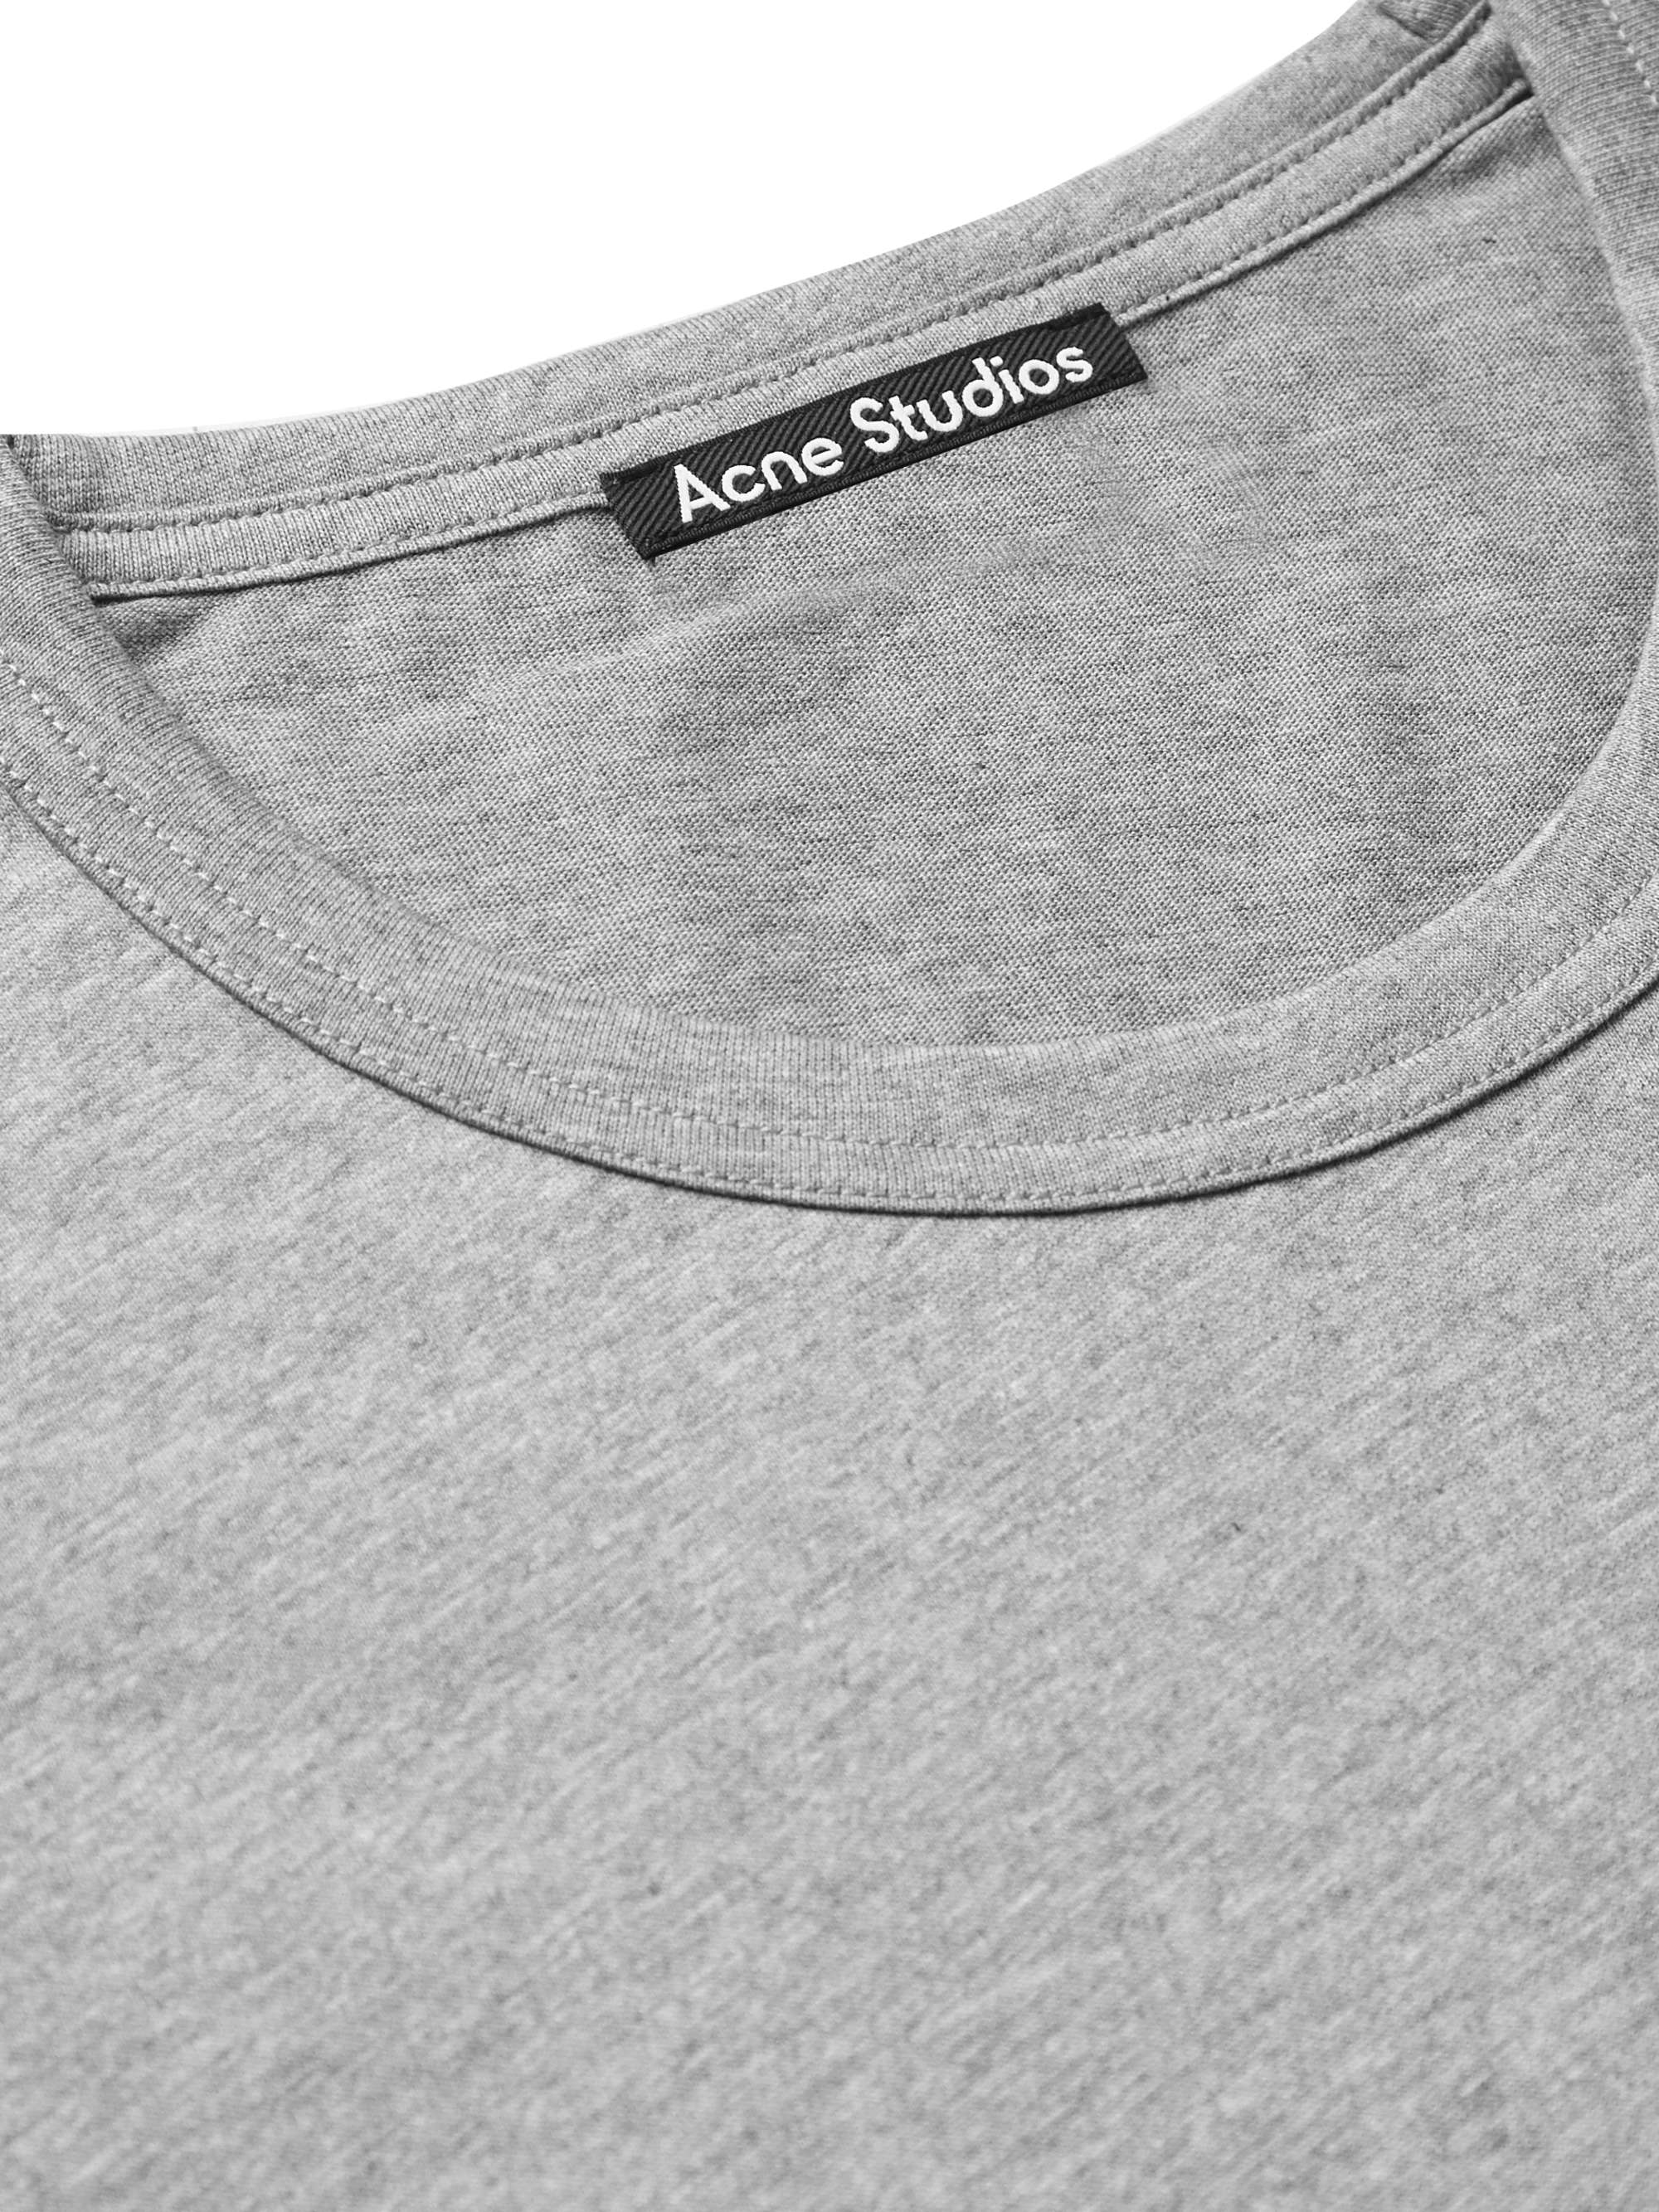 ACNE STUDIOS Logo-Appliquéd Cotton-Jersey T-Shirt